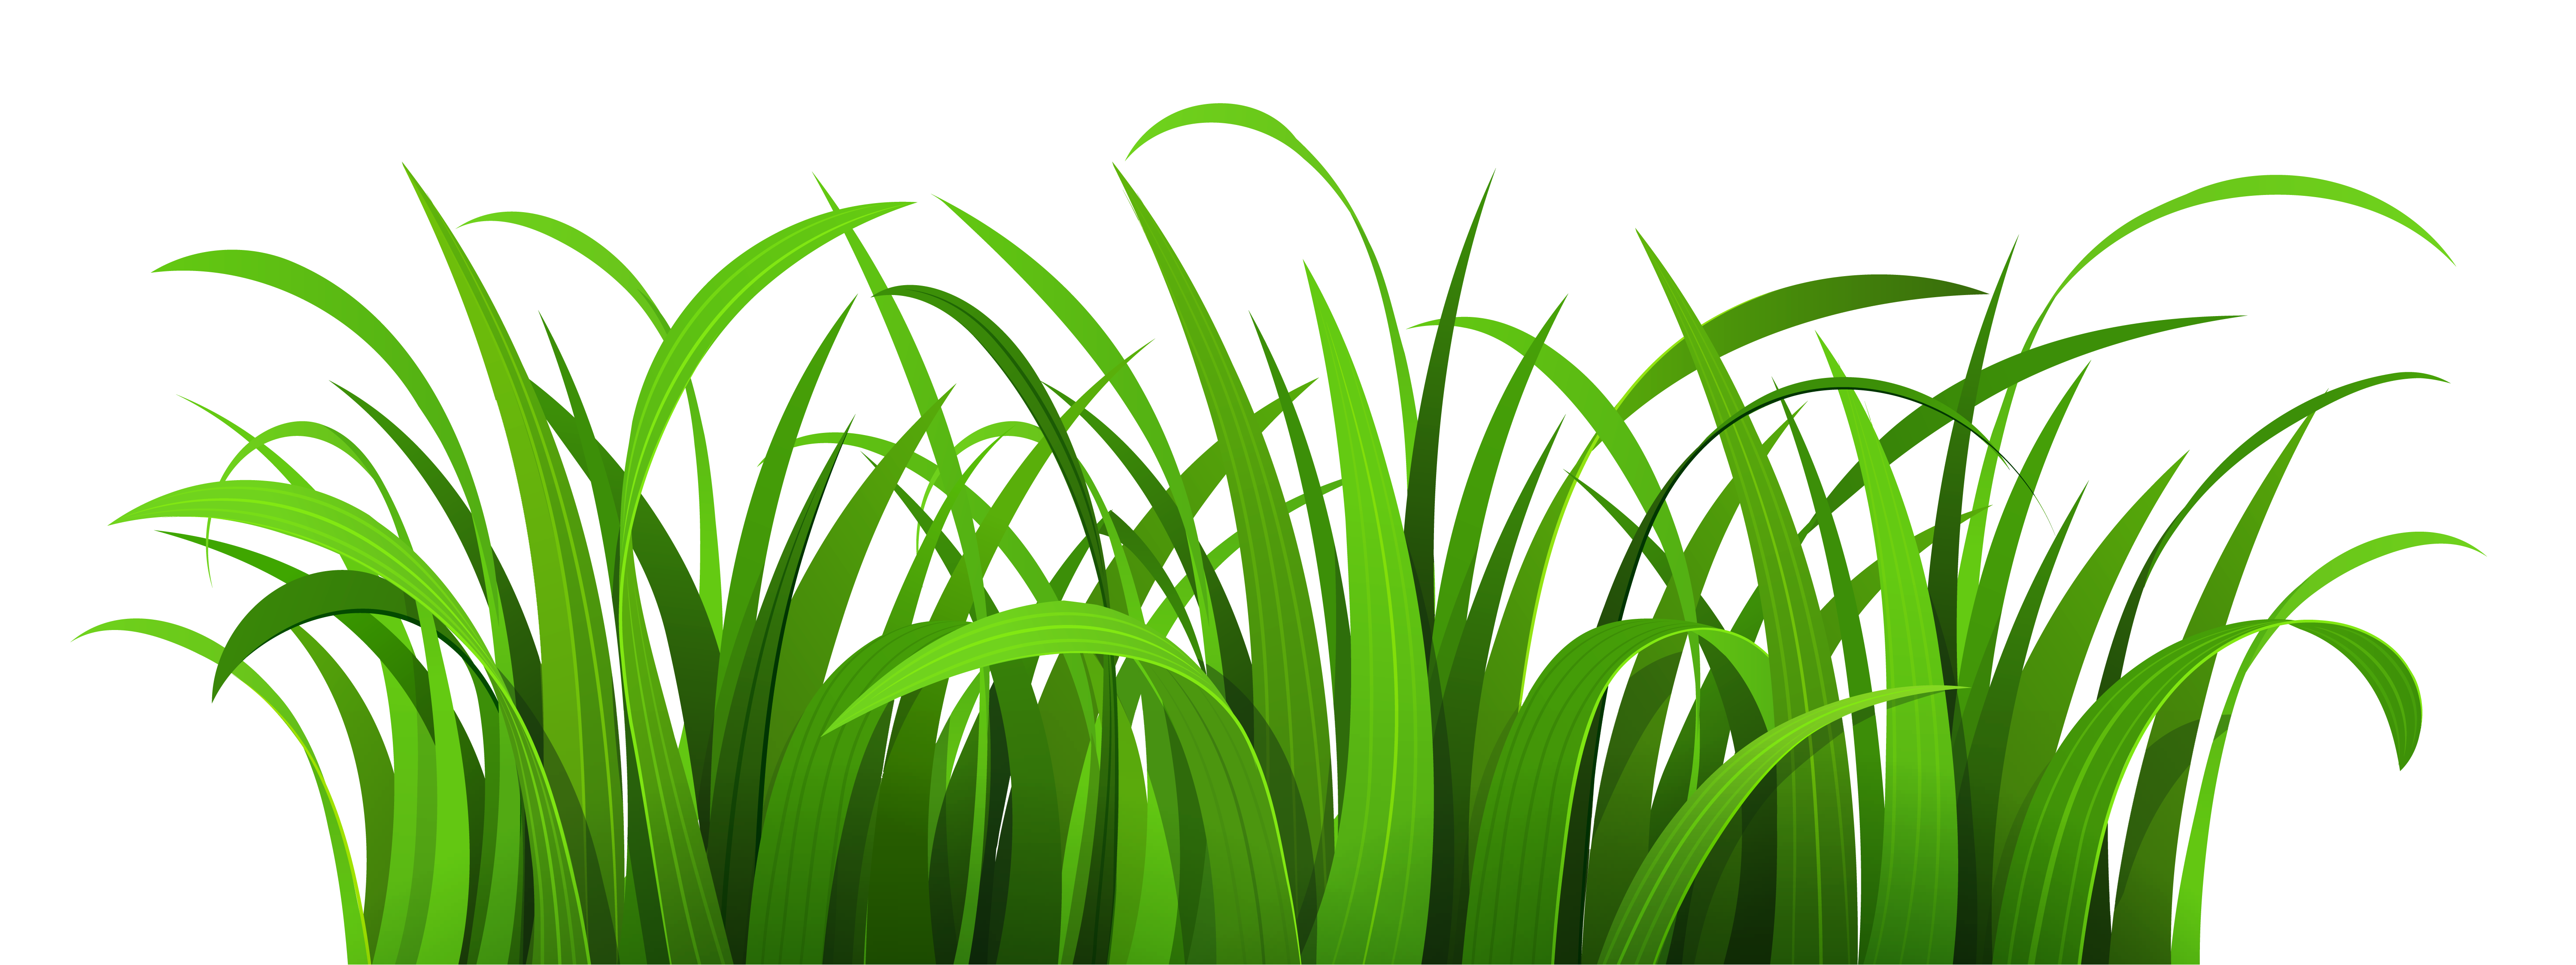 grass clipart light green